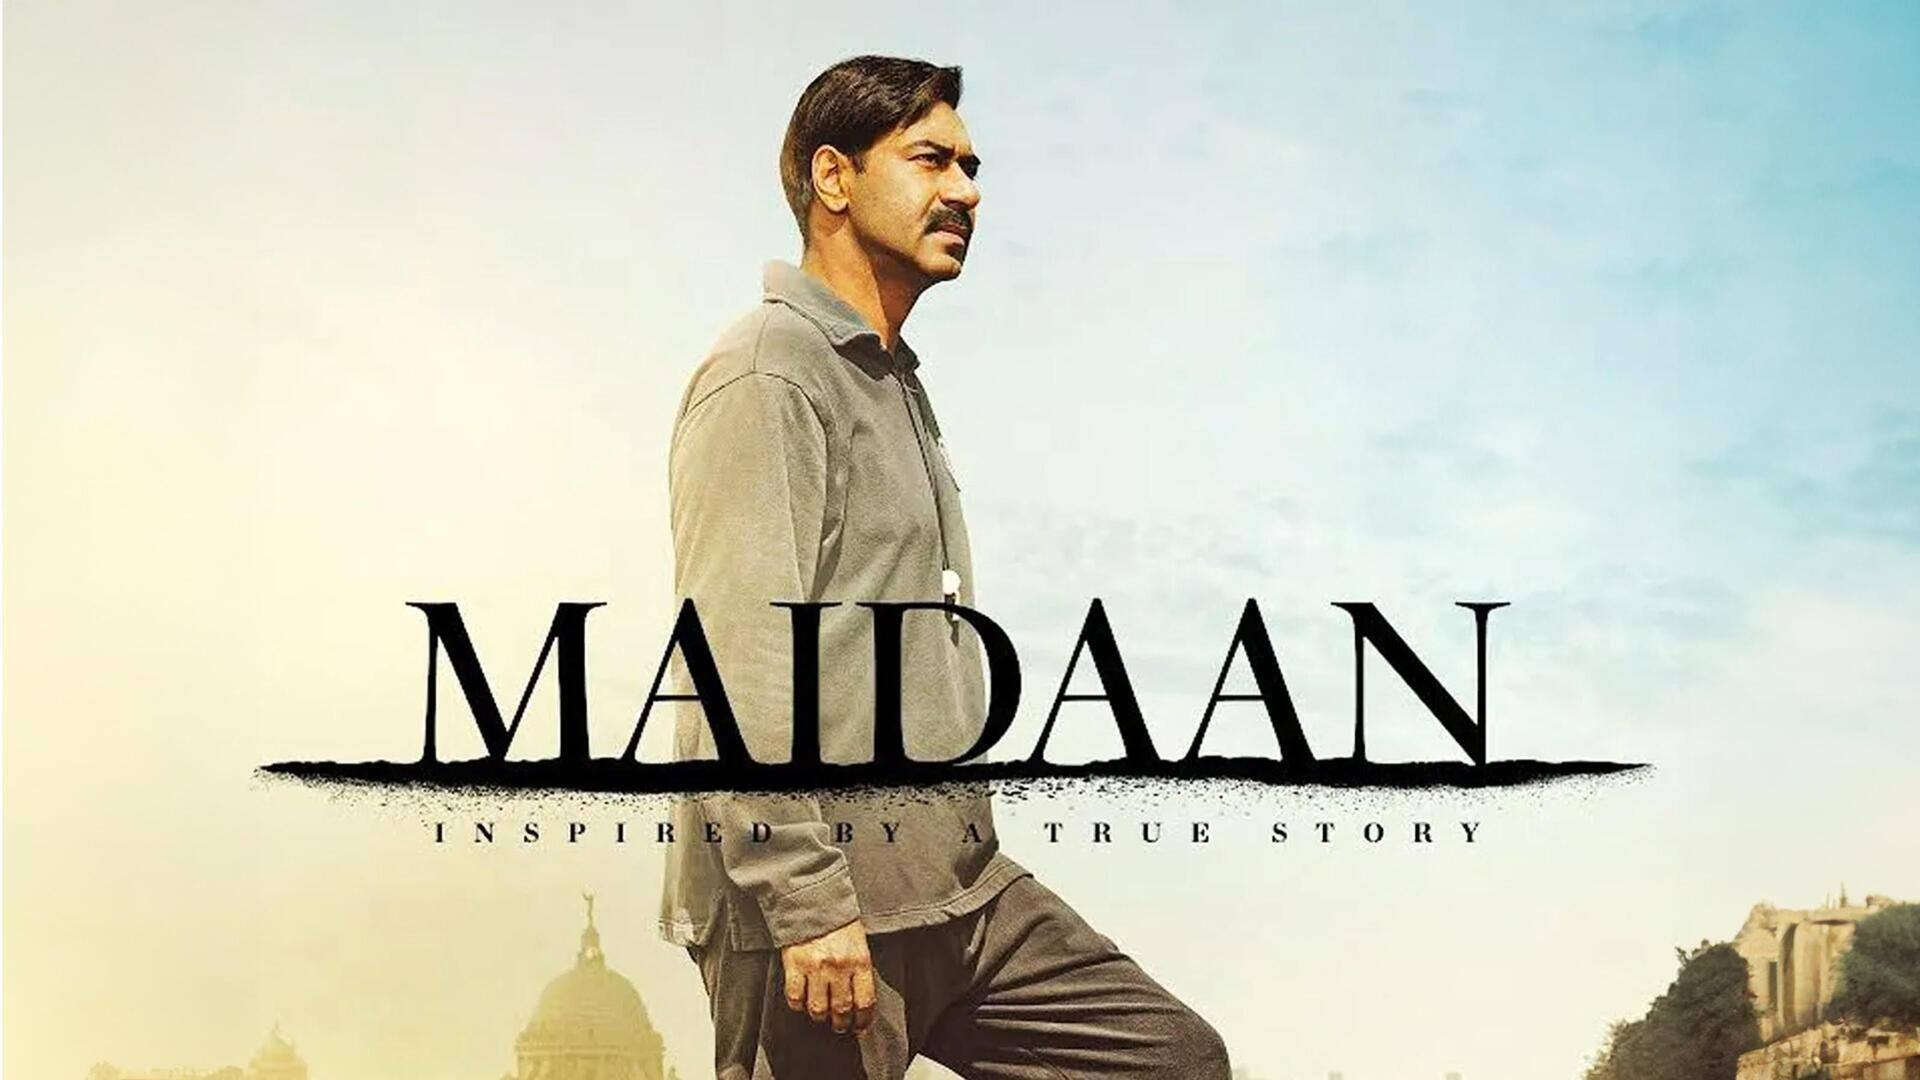 Maidaan: अजय देवगन की मैदान को मिला यू सर्टिफिकेट, रनटाइम और एडवांस बुकिंग की तारीख से भी उठा पर्दा